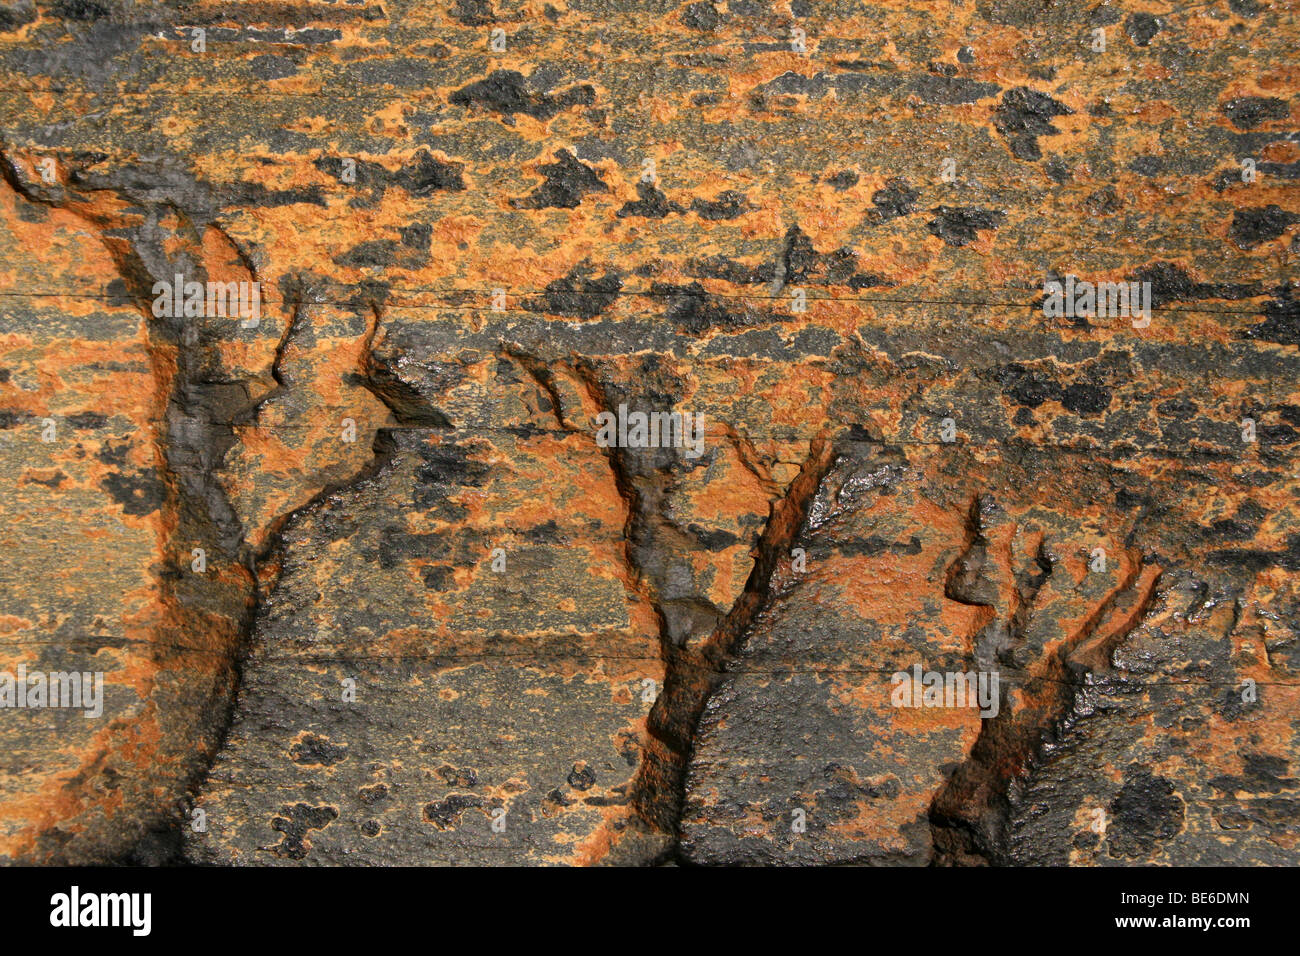 Les profils de couleur rouille sur la roche métamorphique ardoise. Prises à Soweto, Johannesburg, Afrique du Sud Banque D'Images